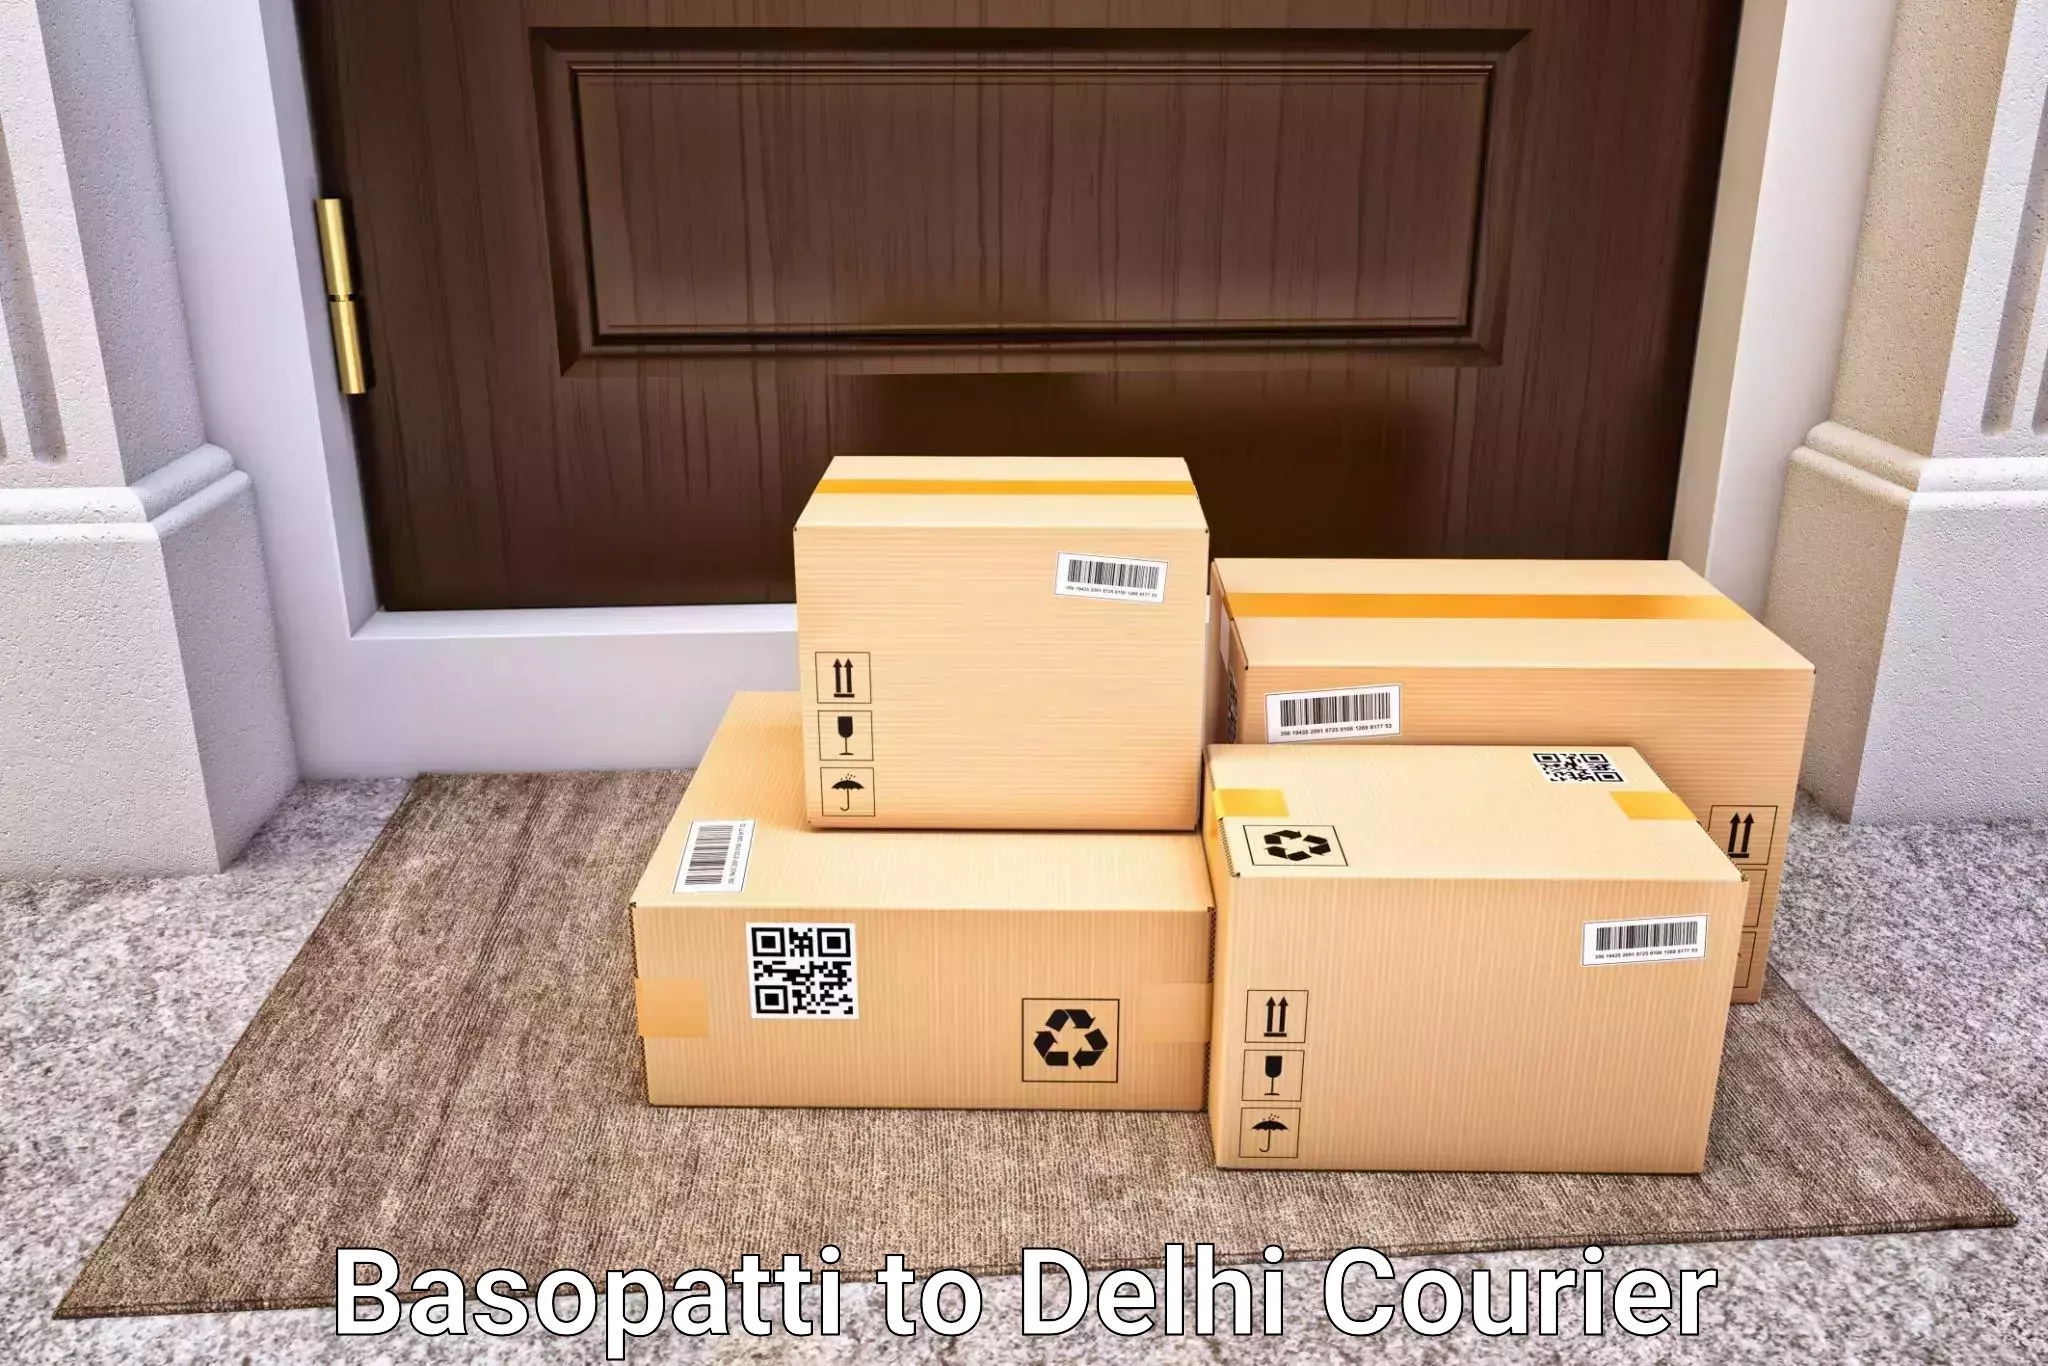 Luggage transport service Basopatti to Ashok Vihar